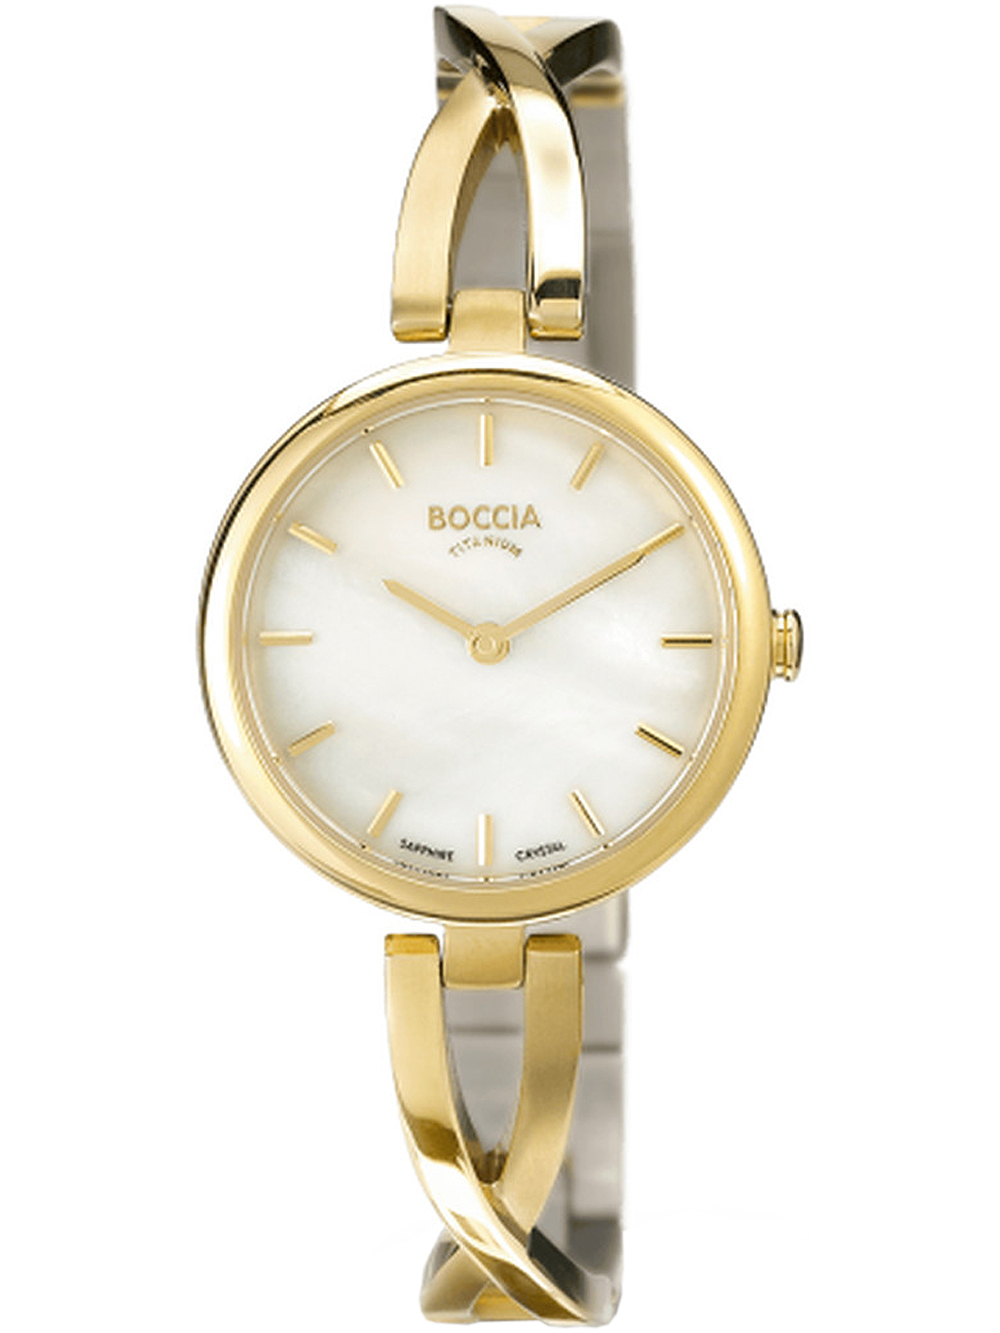 Dámské hodinky Boccia 3239-03 ladies watch titanium 28mm 5ATM